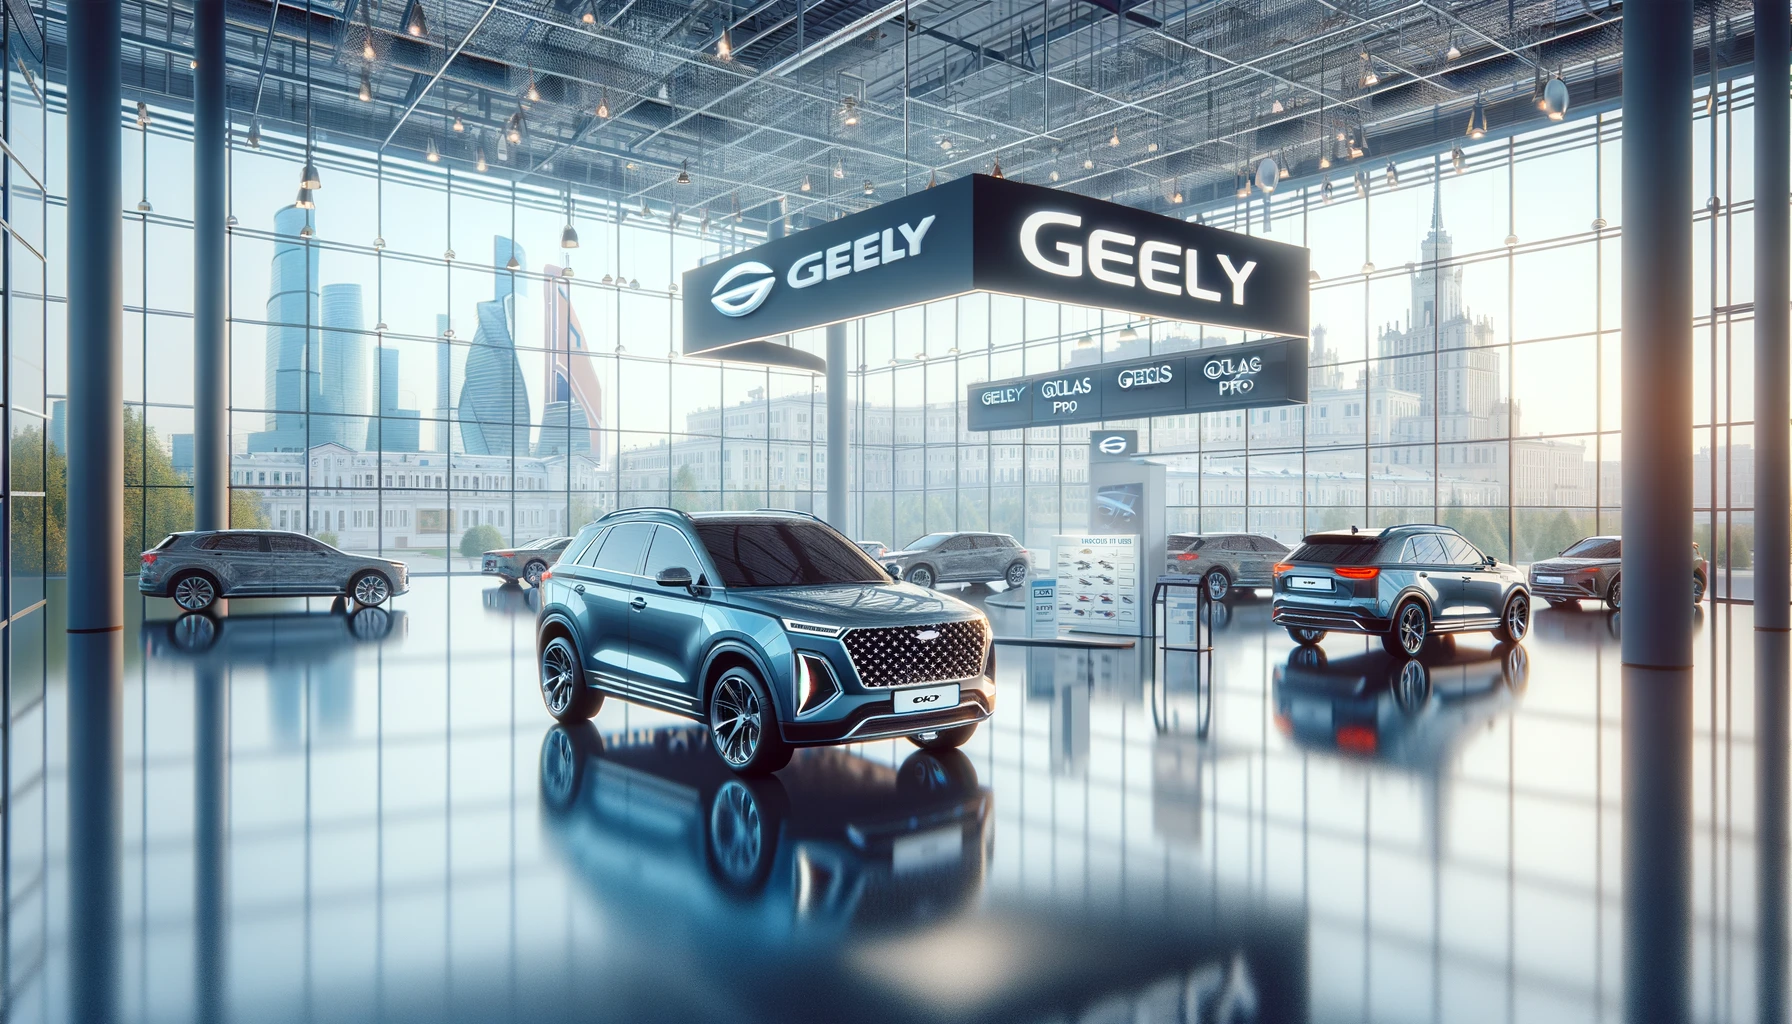 Исчерпание запасов Geely Atlas Pro в московских дилерских центрах